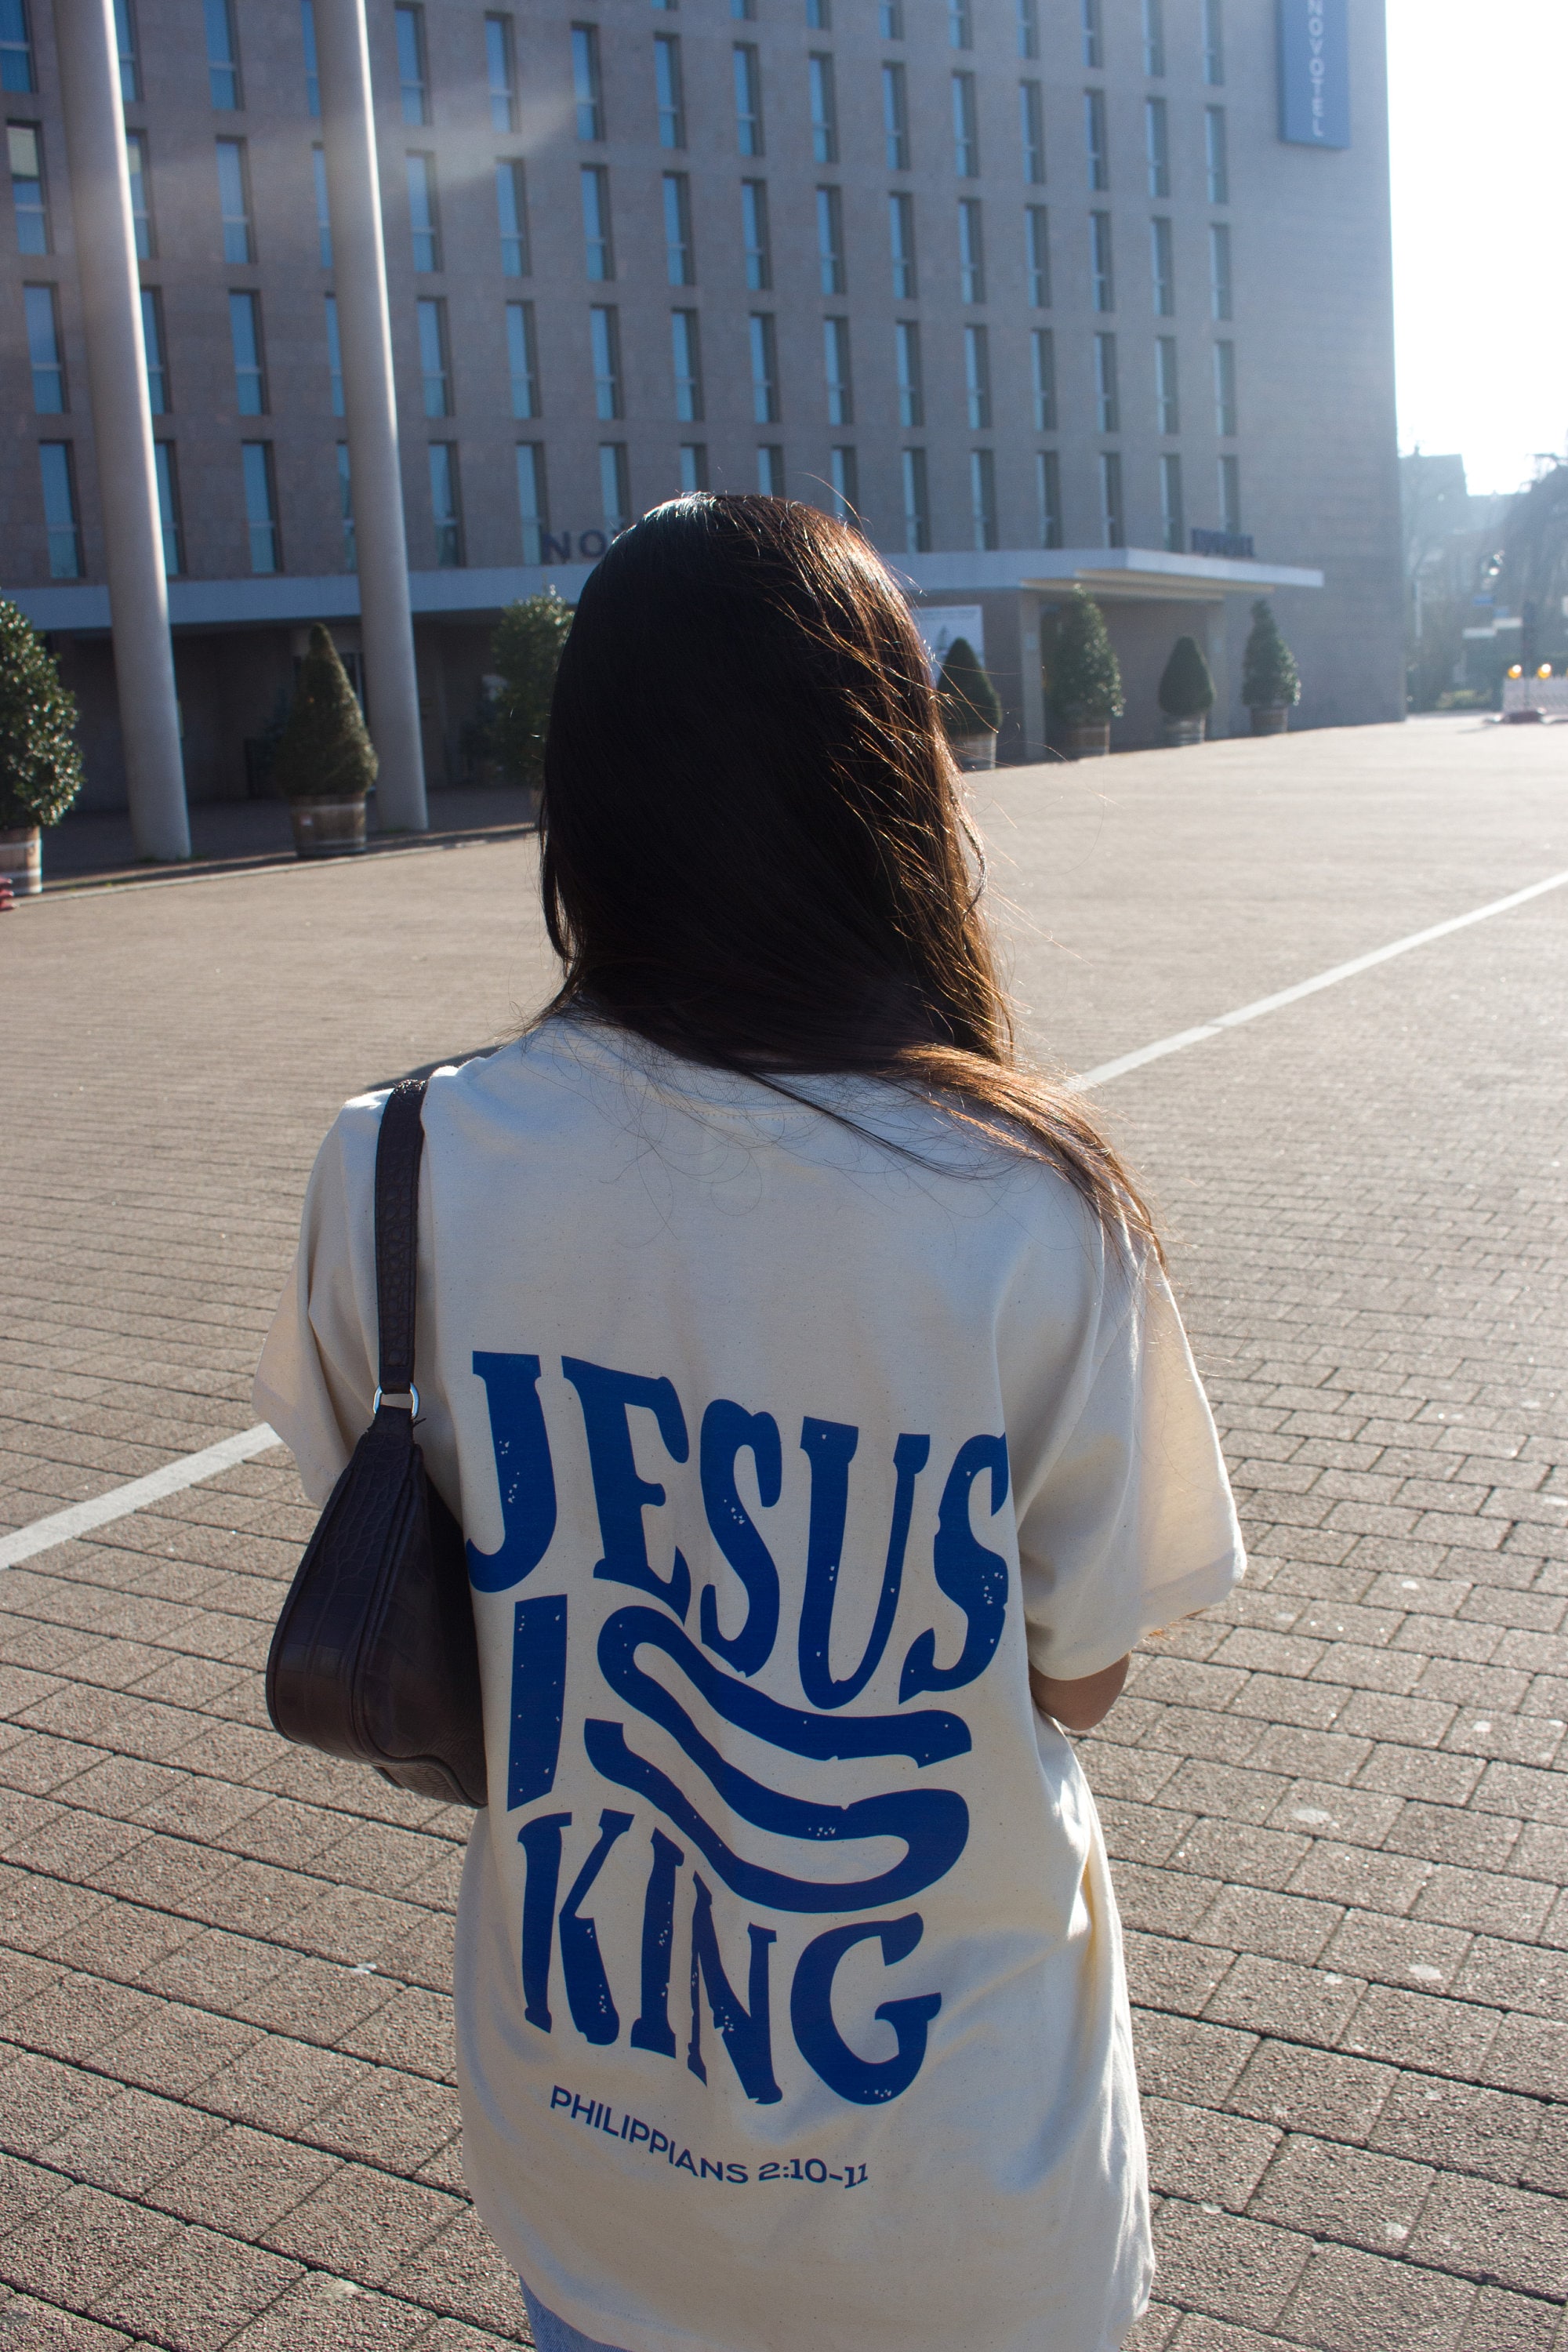 Jesus is King Aesthetic Christian T-shirt Gender Neutral - Etsy